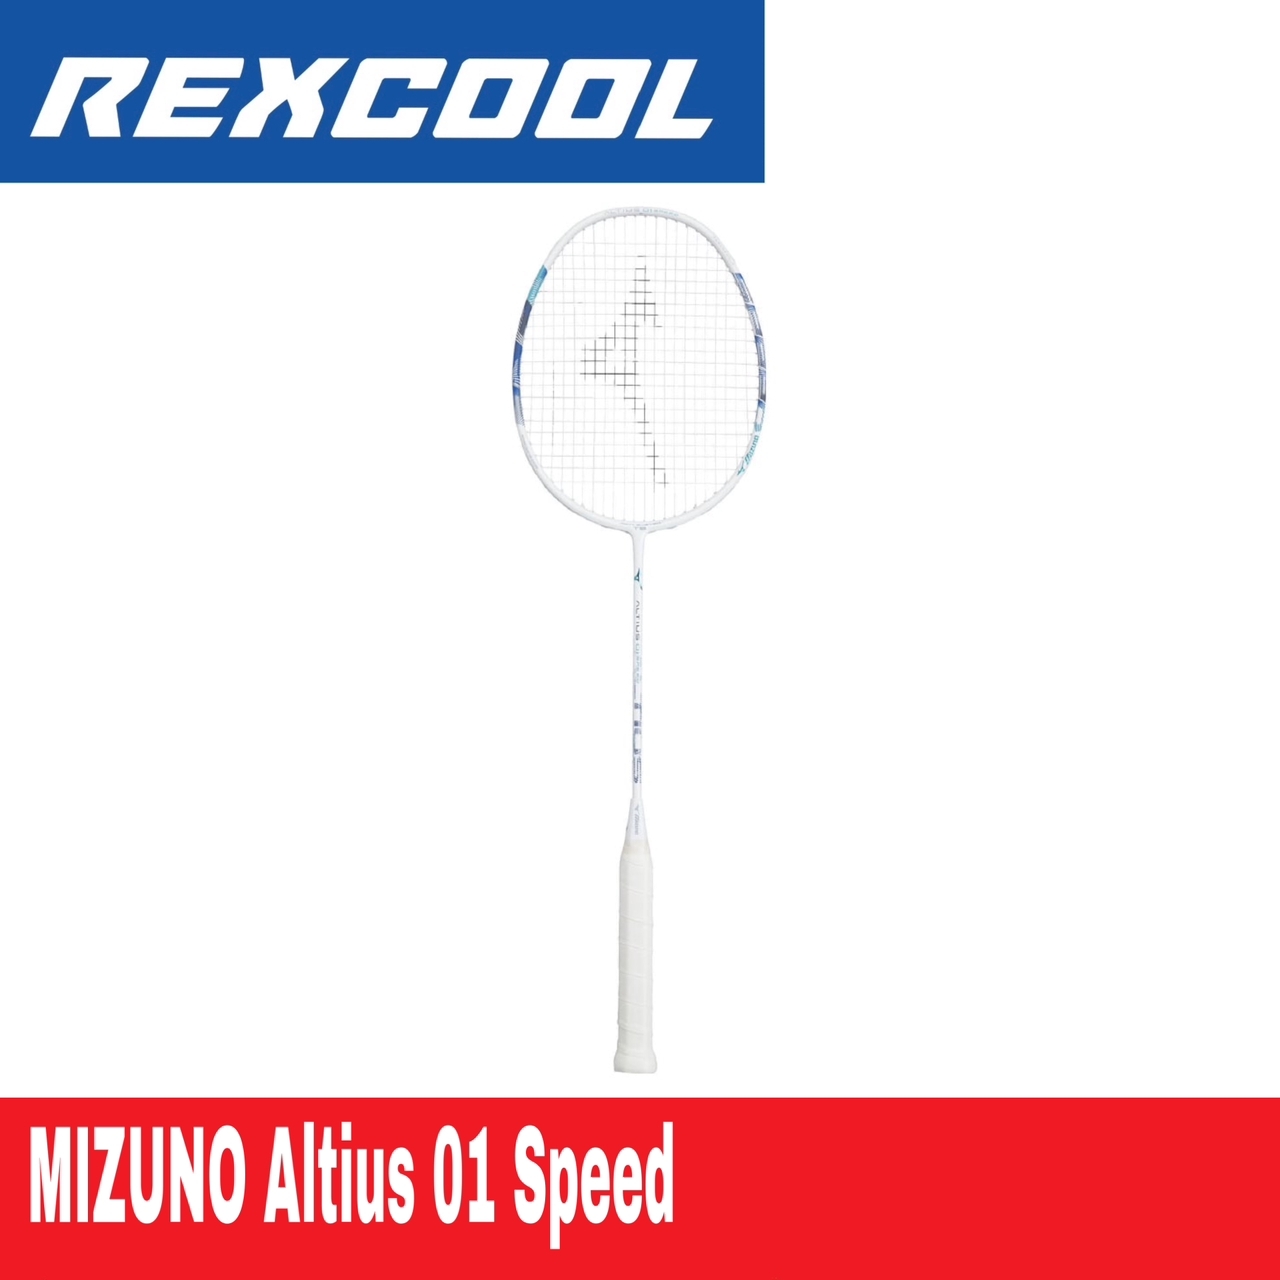 MIZUNO Altius 01 Speed Badminton Racket – Rexcool Sports